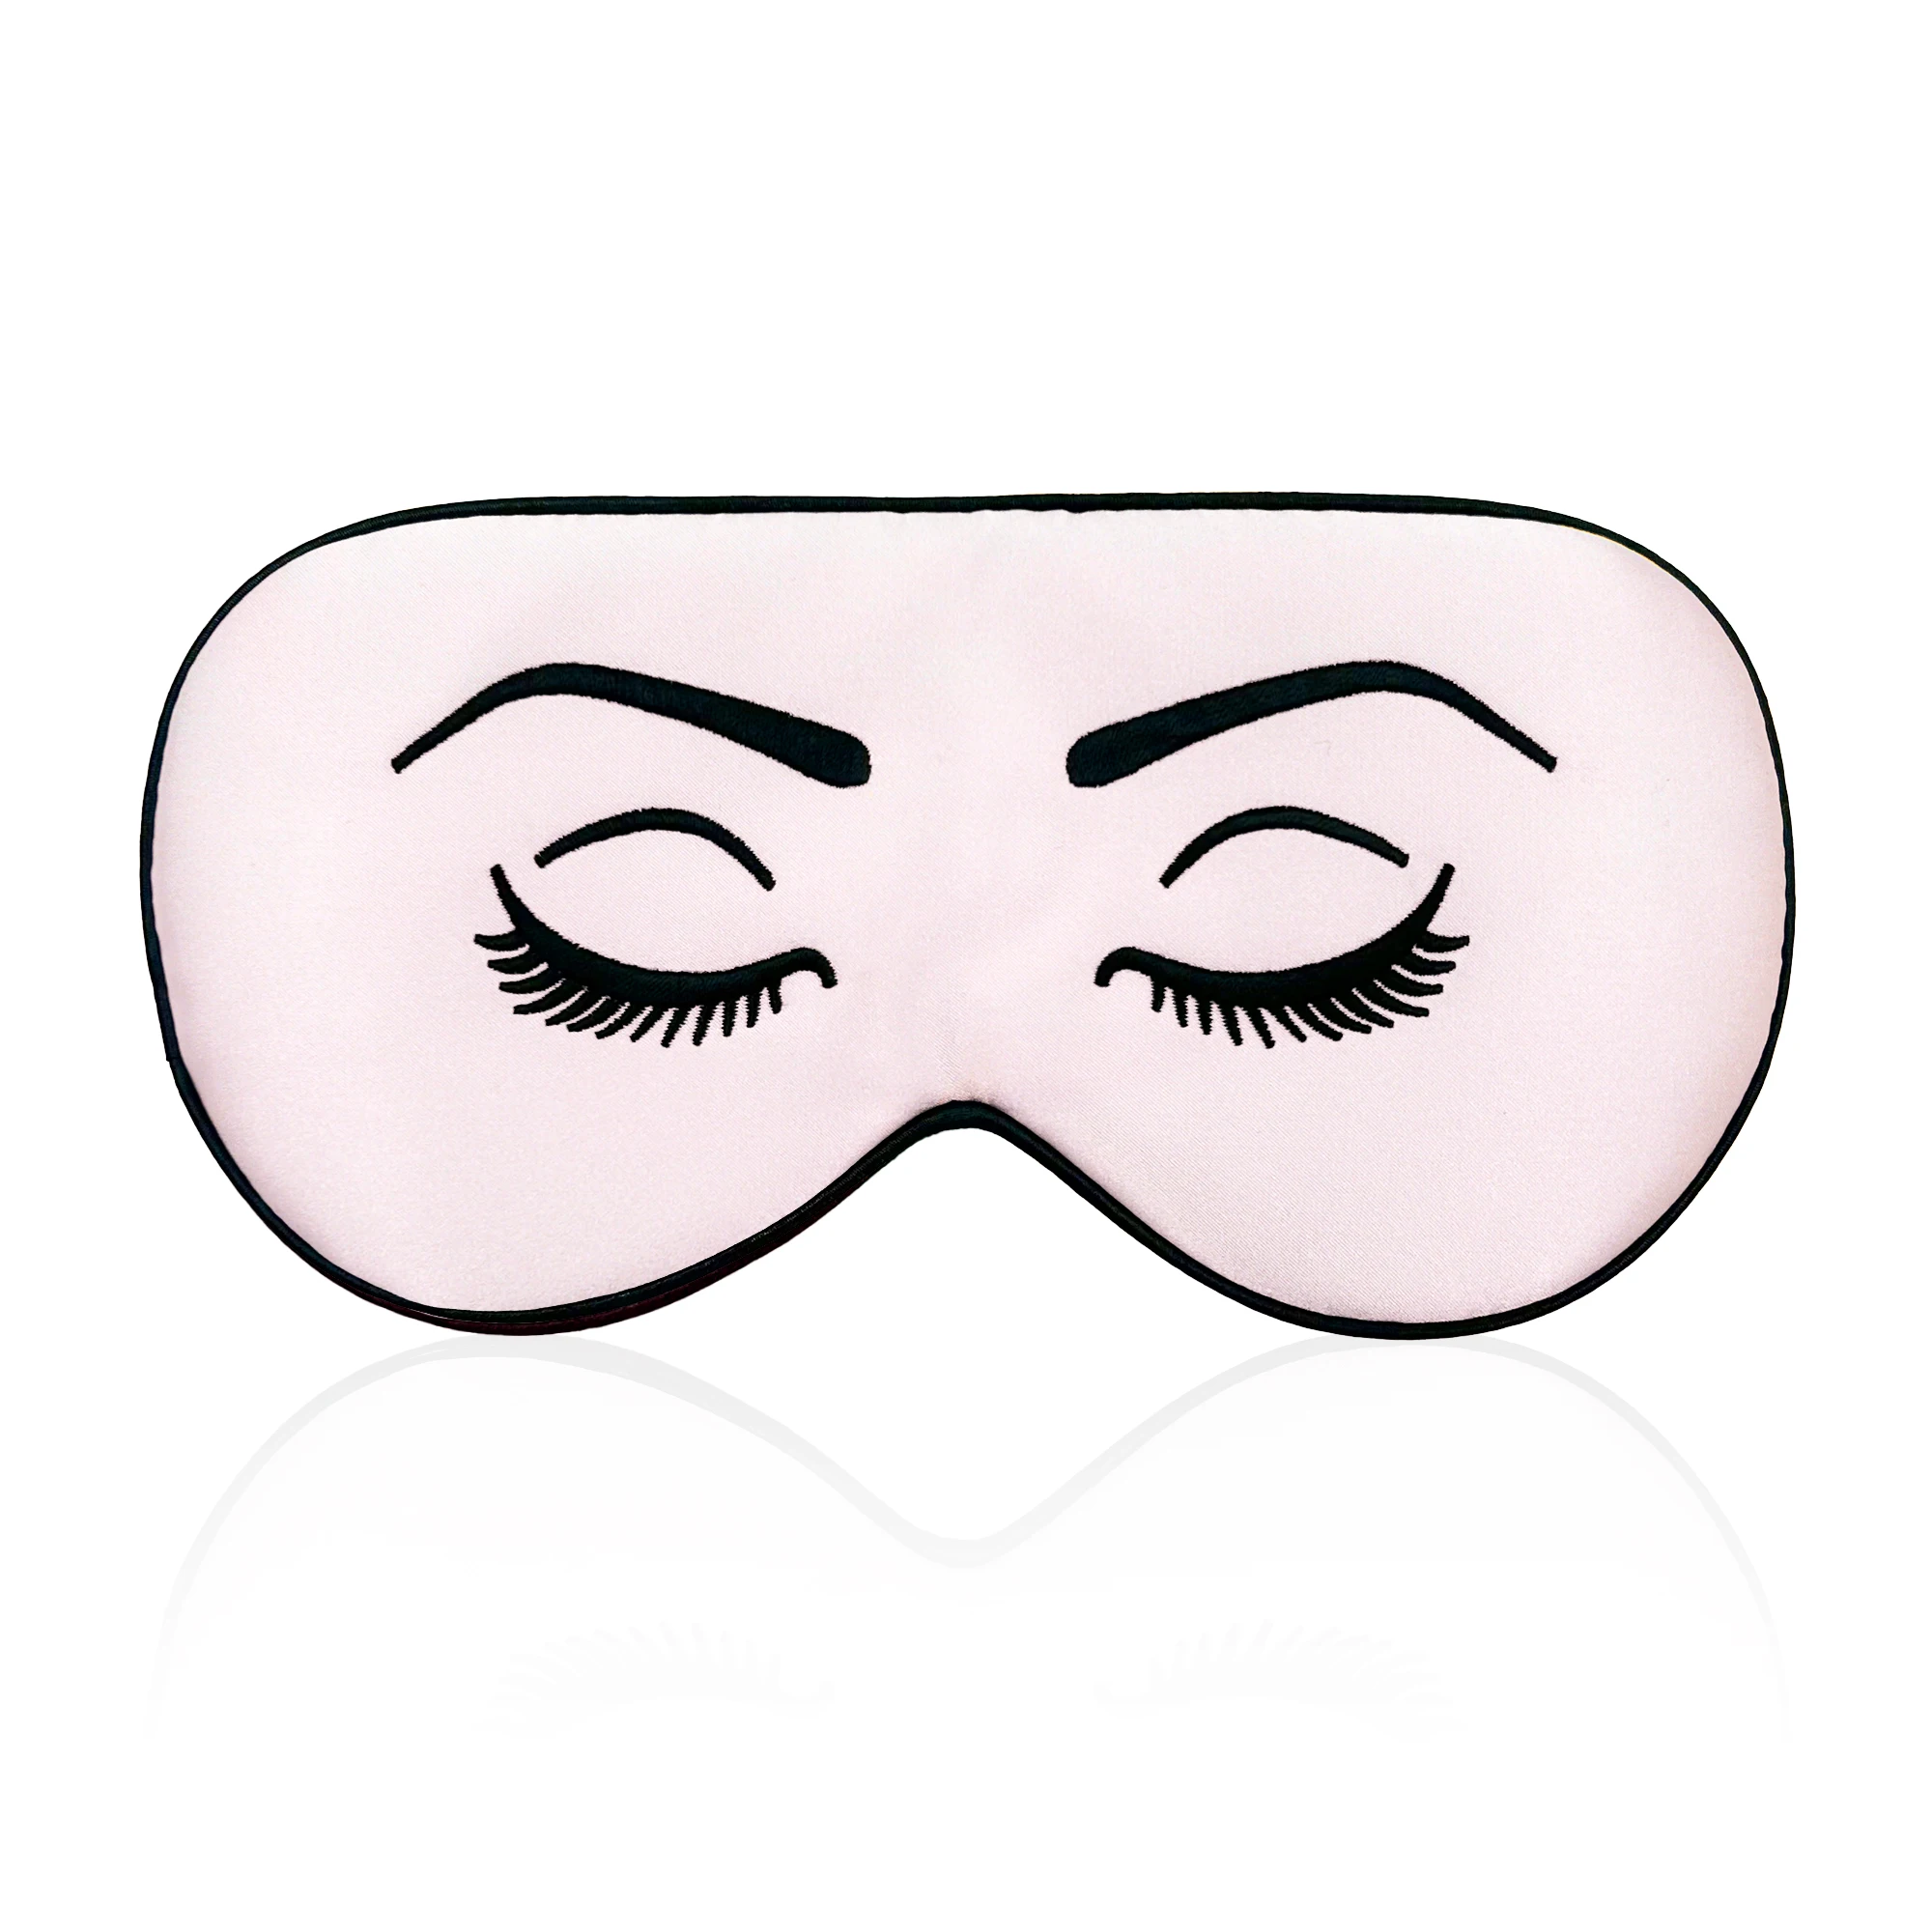 100% natürliche Schlaf maske aus Mulberrry-Seide für schlafende Augen decken